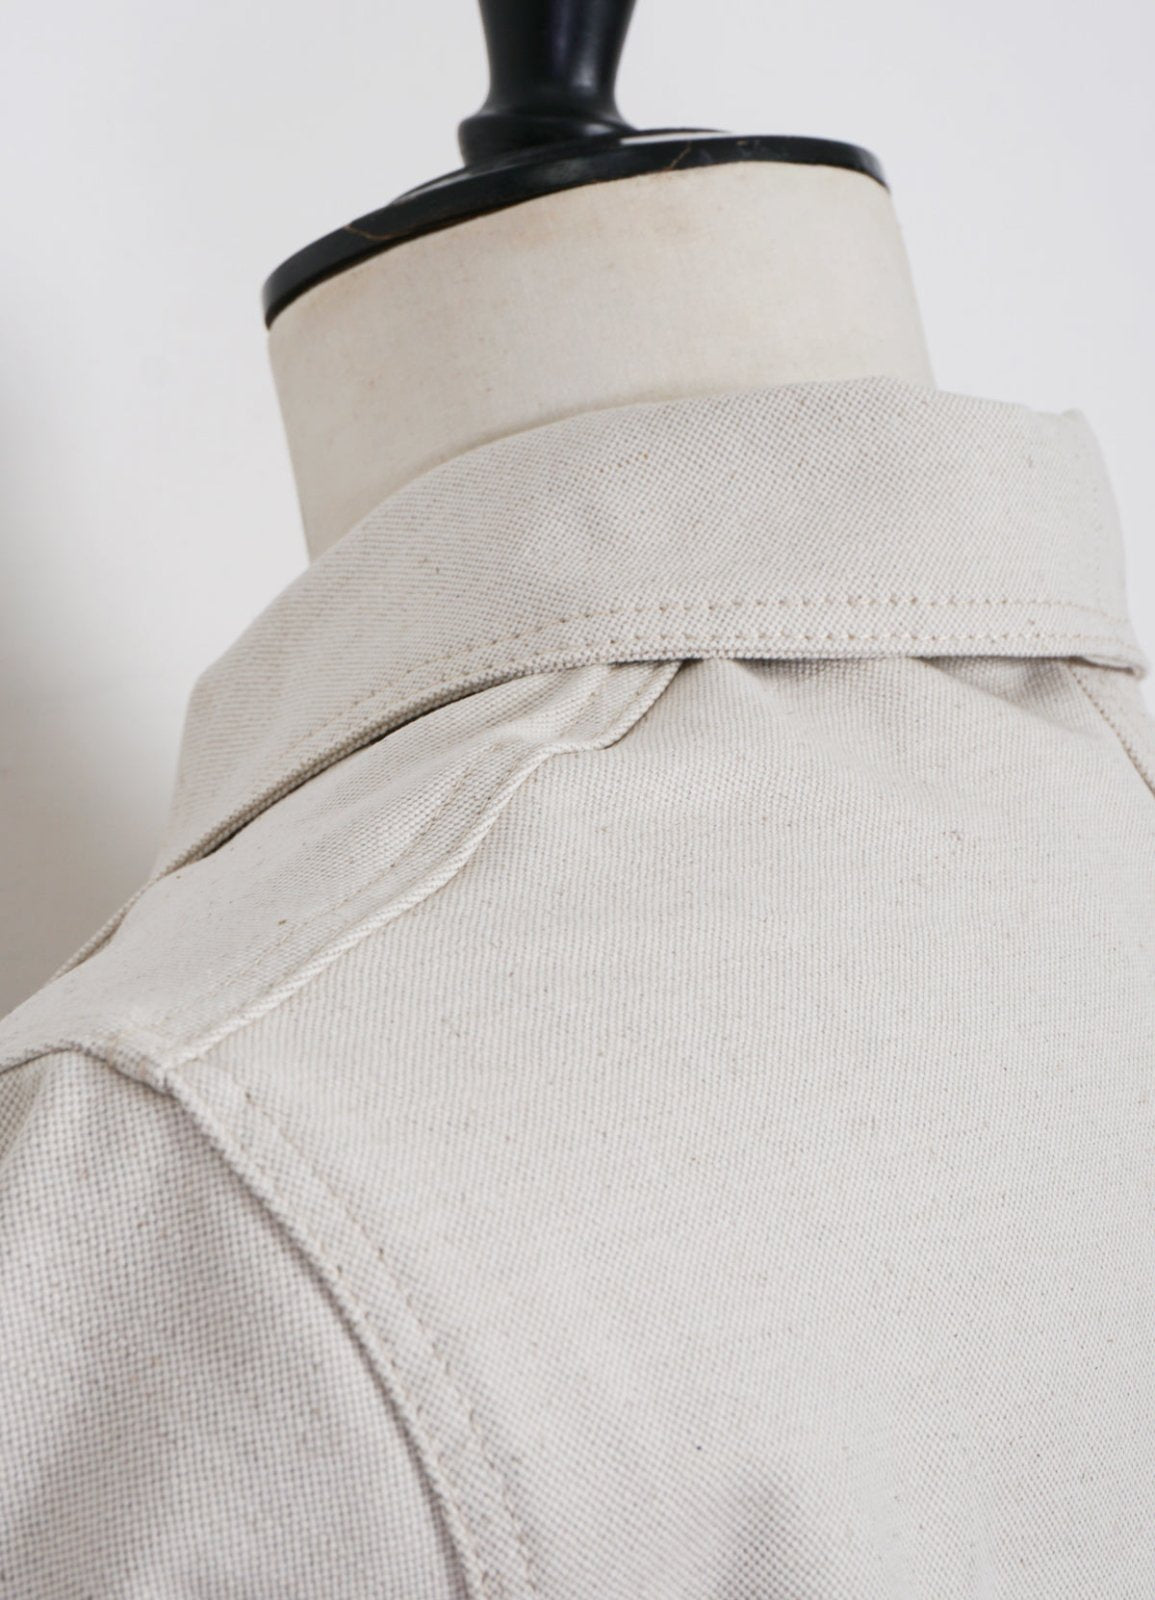 LE LABOUREUR - WORK JACKET | Linen/Cotton Blend | Flax Nature - HANSEN Garments